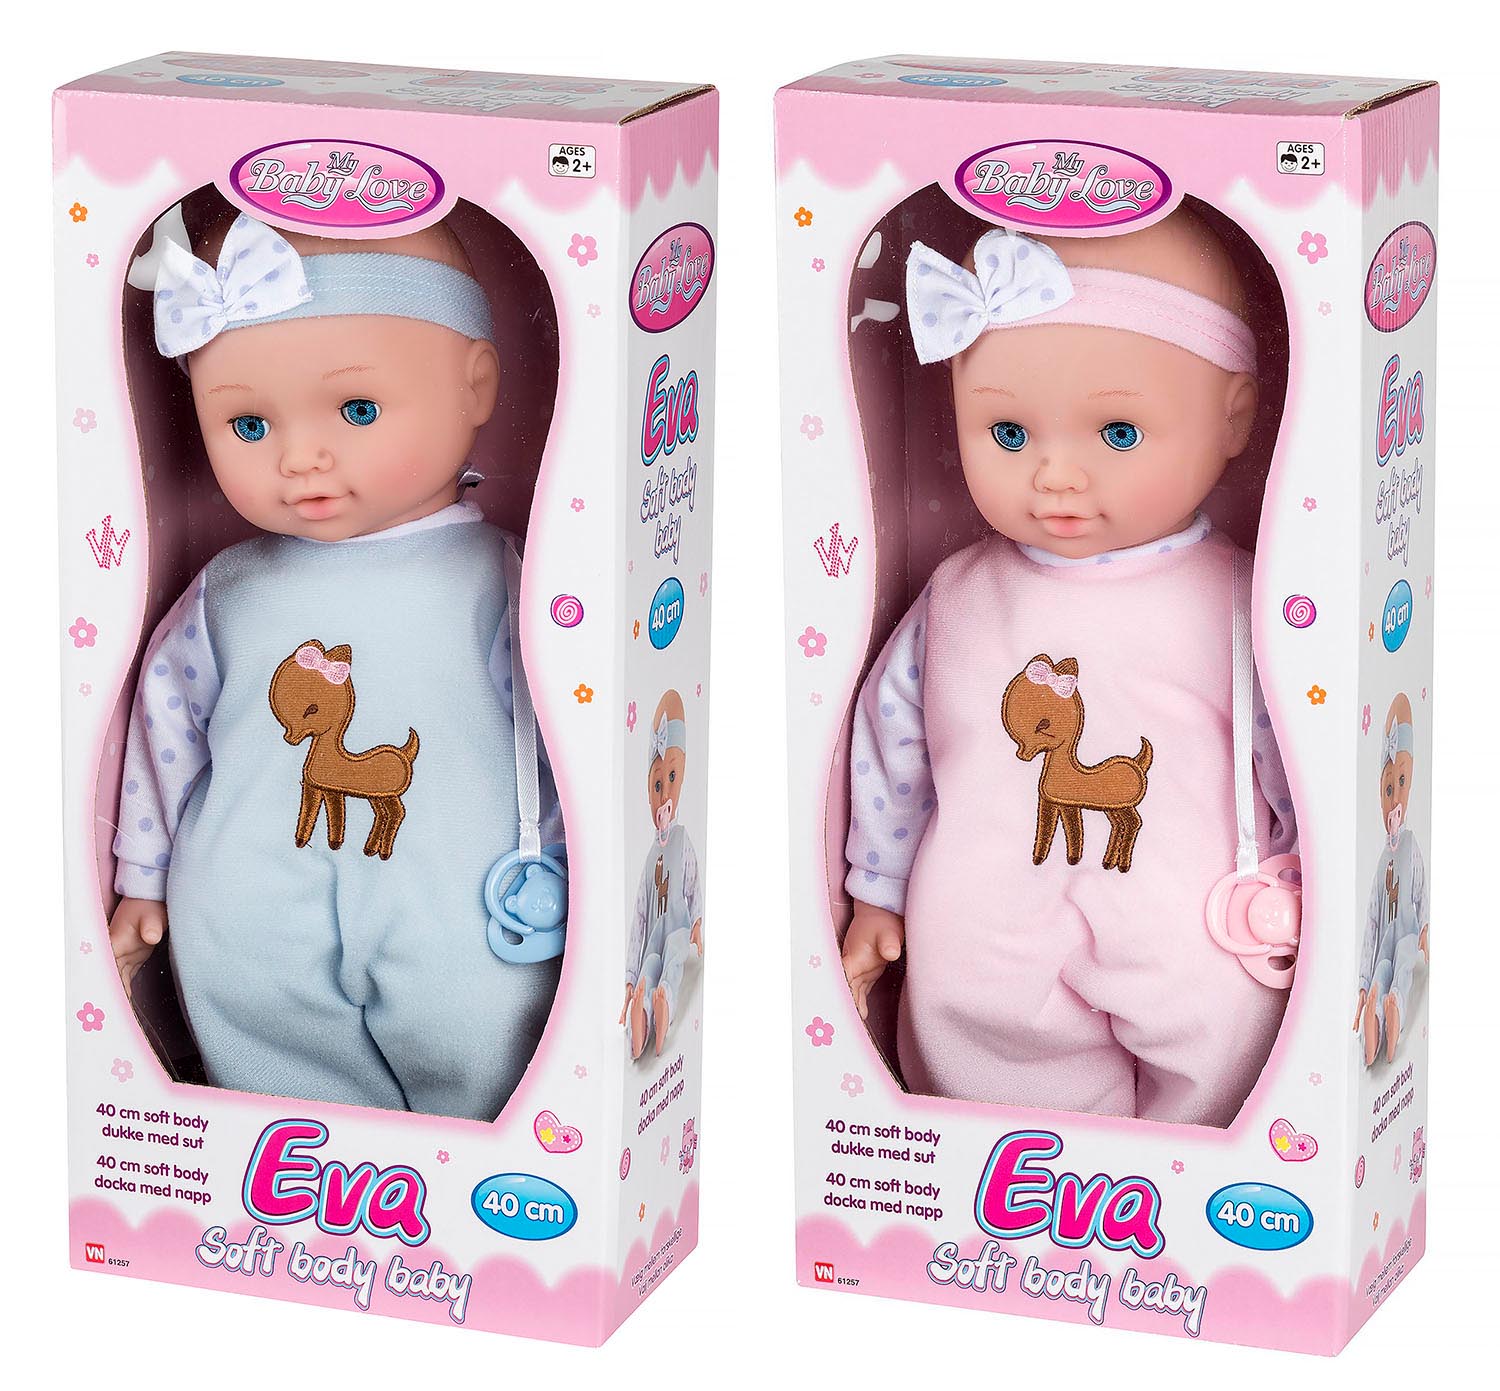 Europa Dalset Pearly My baby dukke Eva 40 cm - Stort udvalg af legetøj til børn